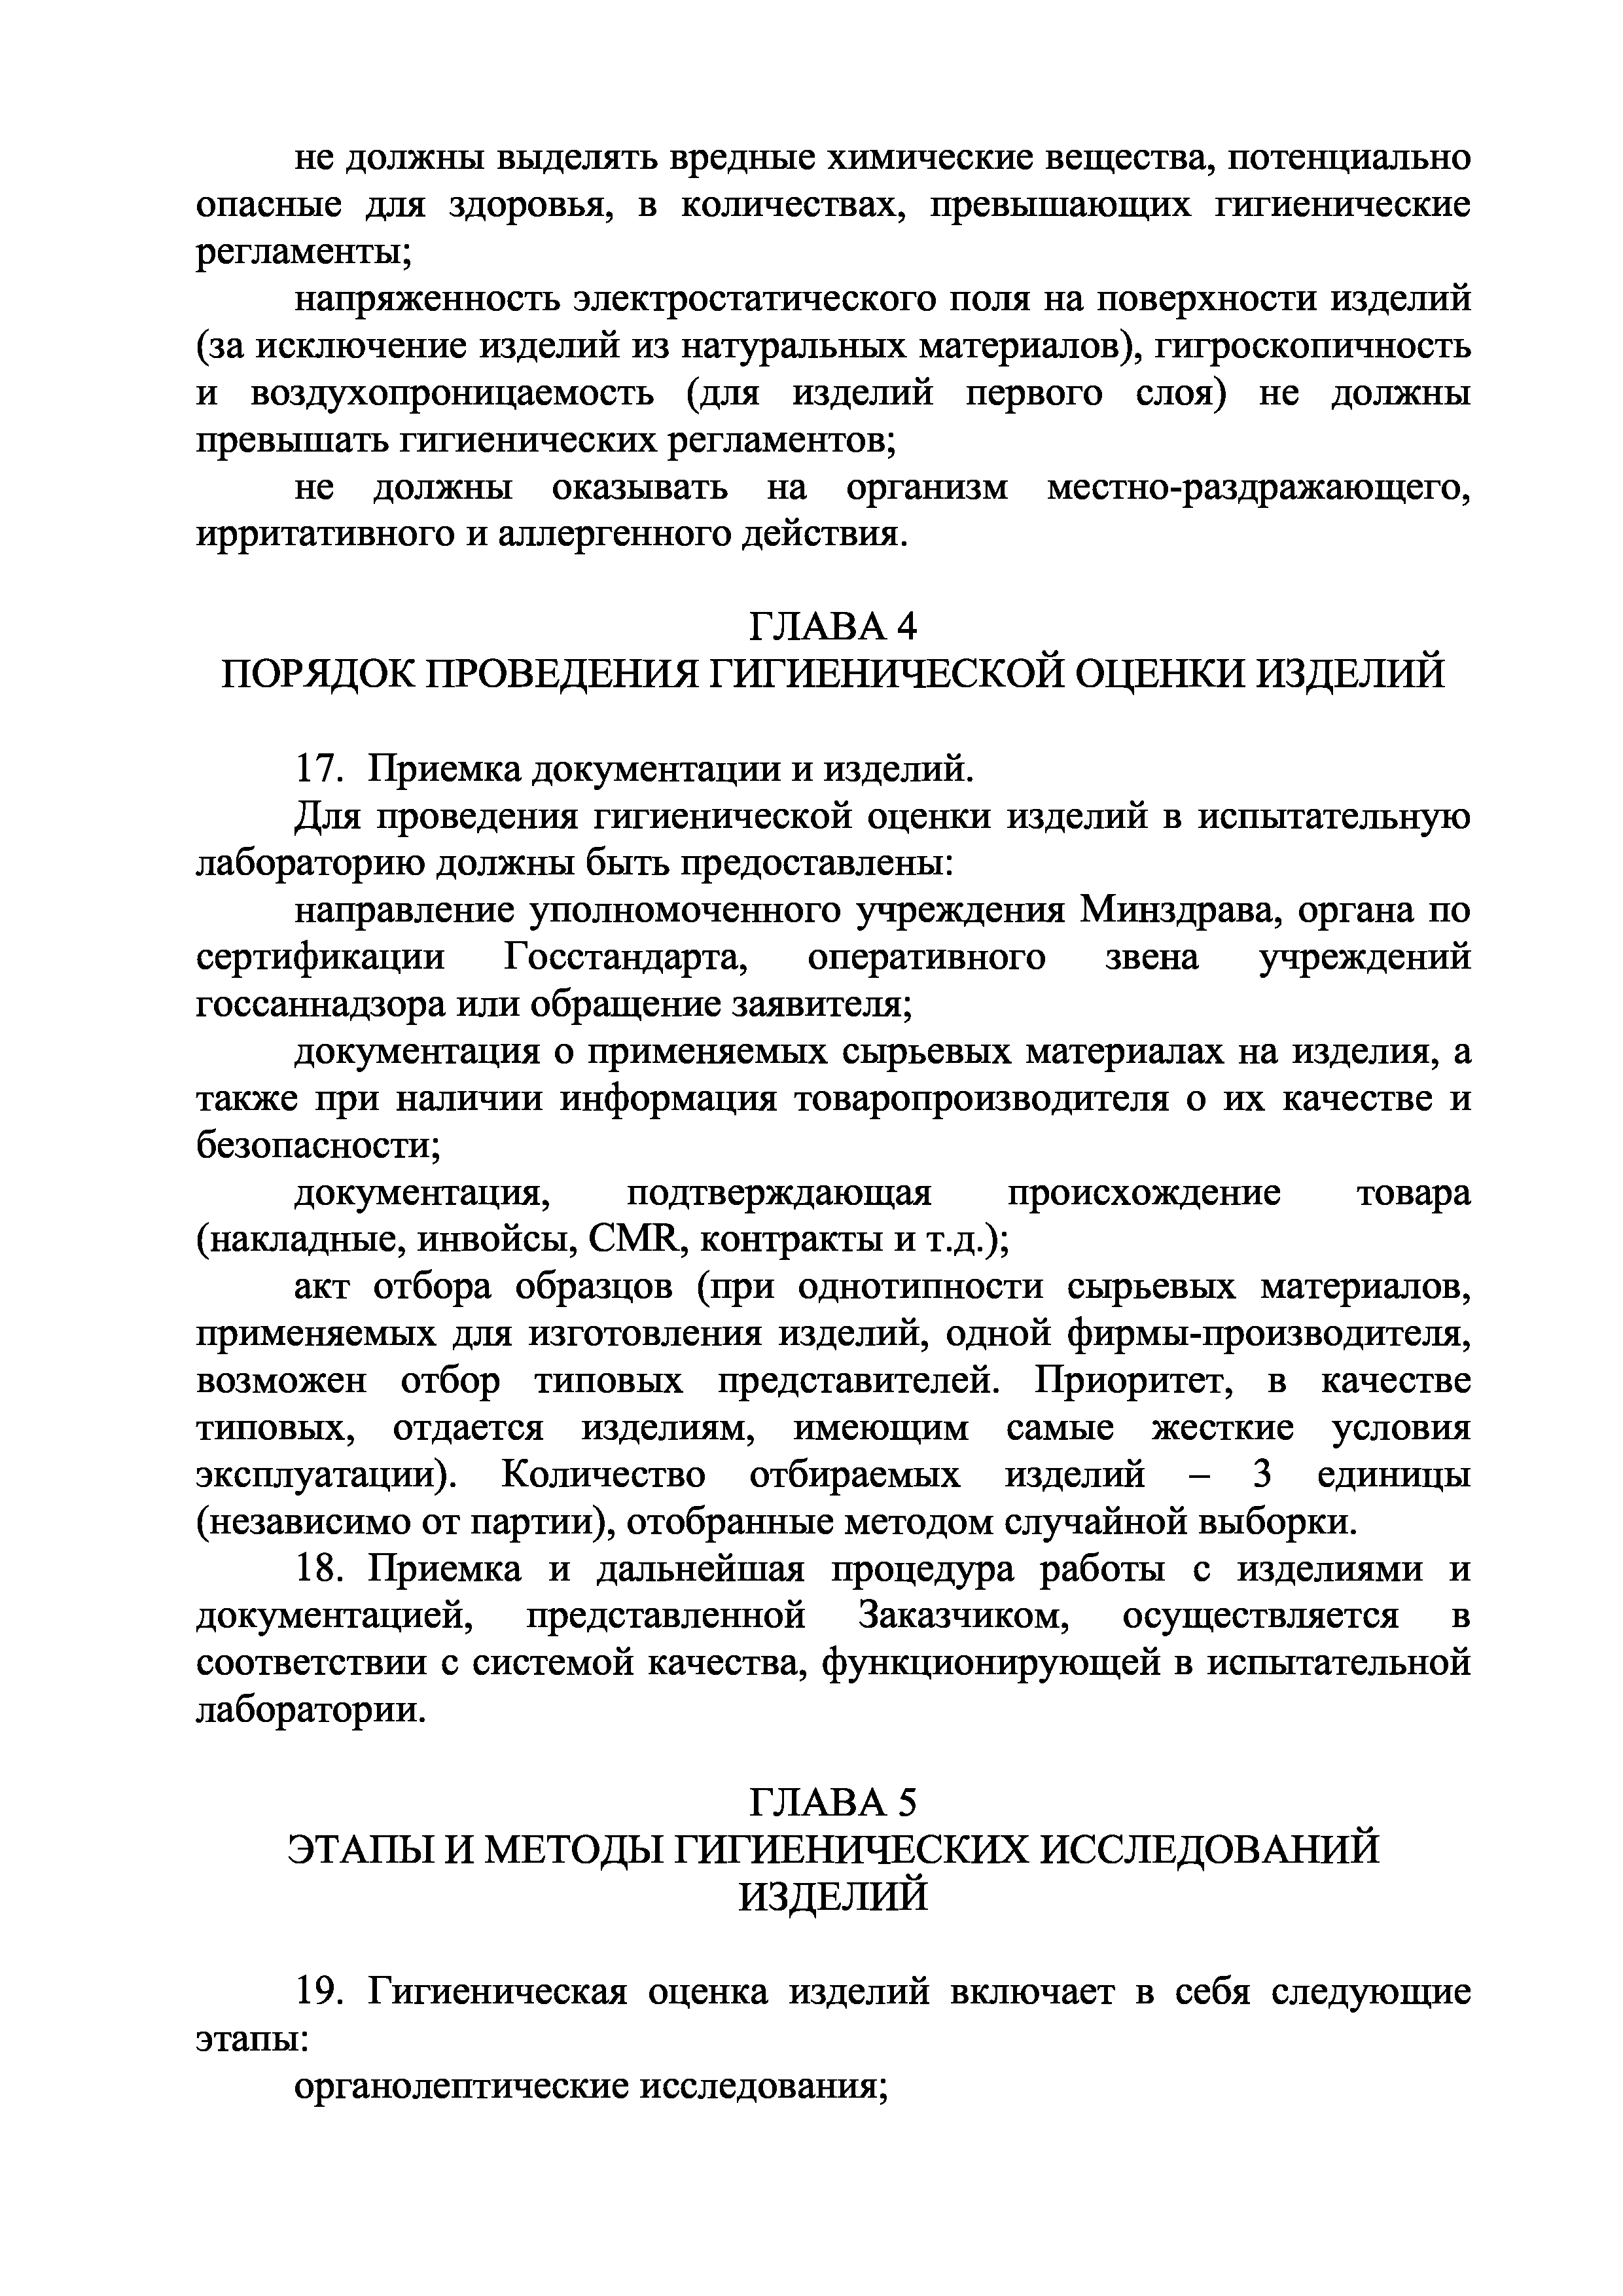 Инструкция 1.1.10-12-96-2005